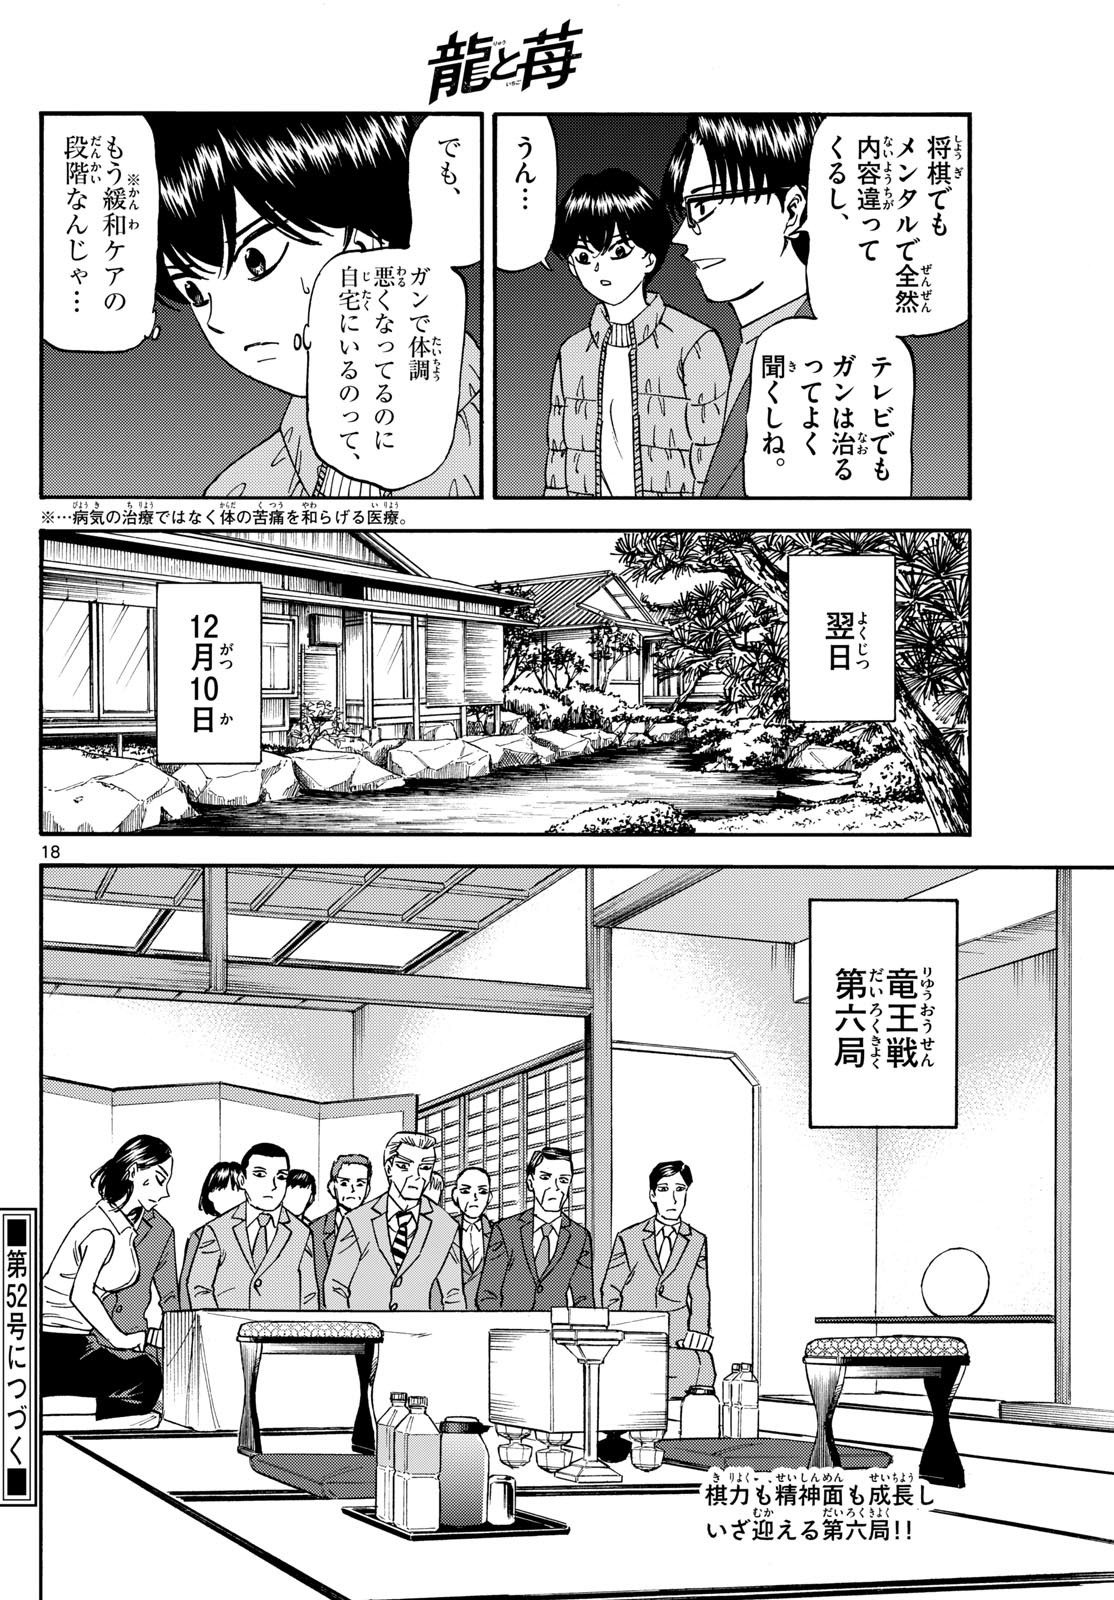 Ryu-to-Ichigo - Chapter 168 - Page 18